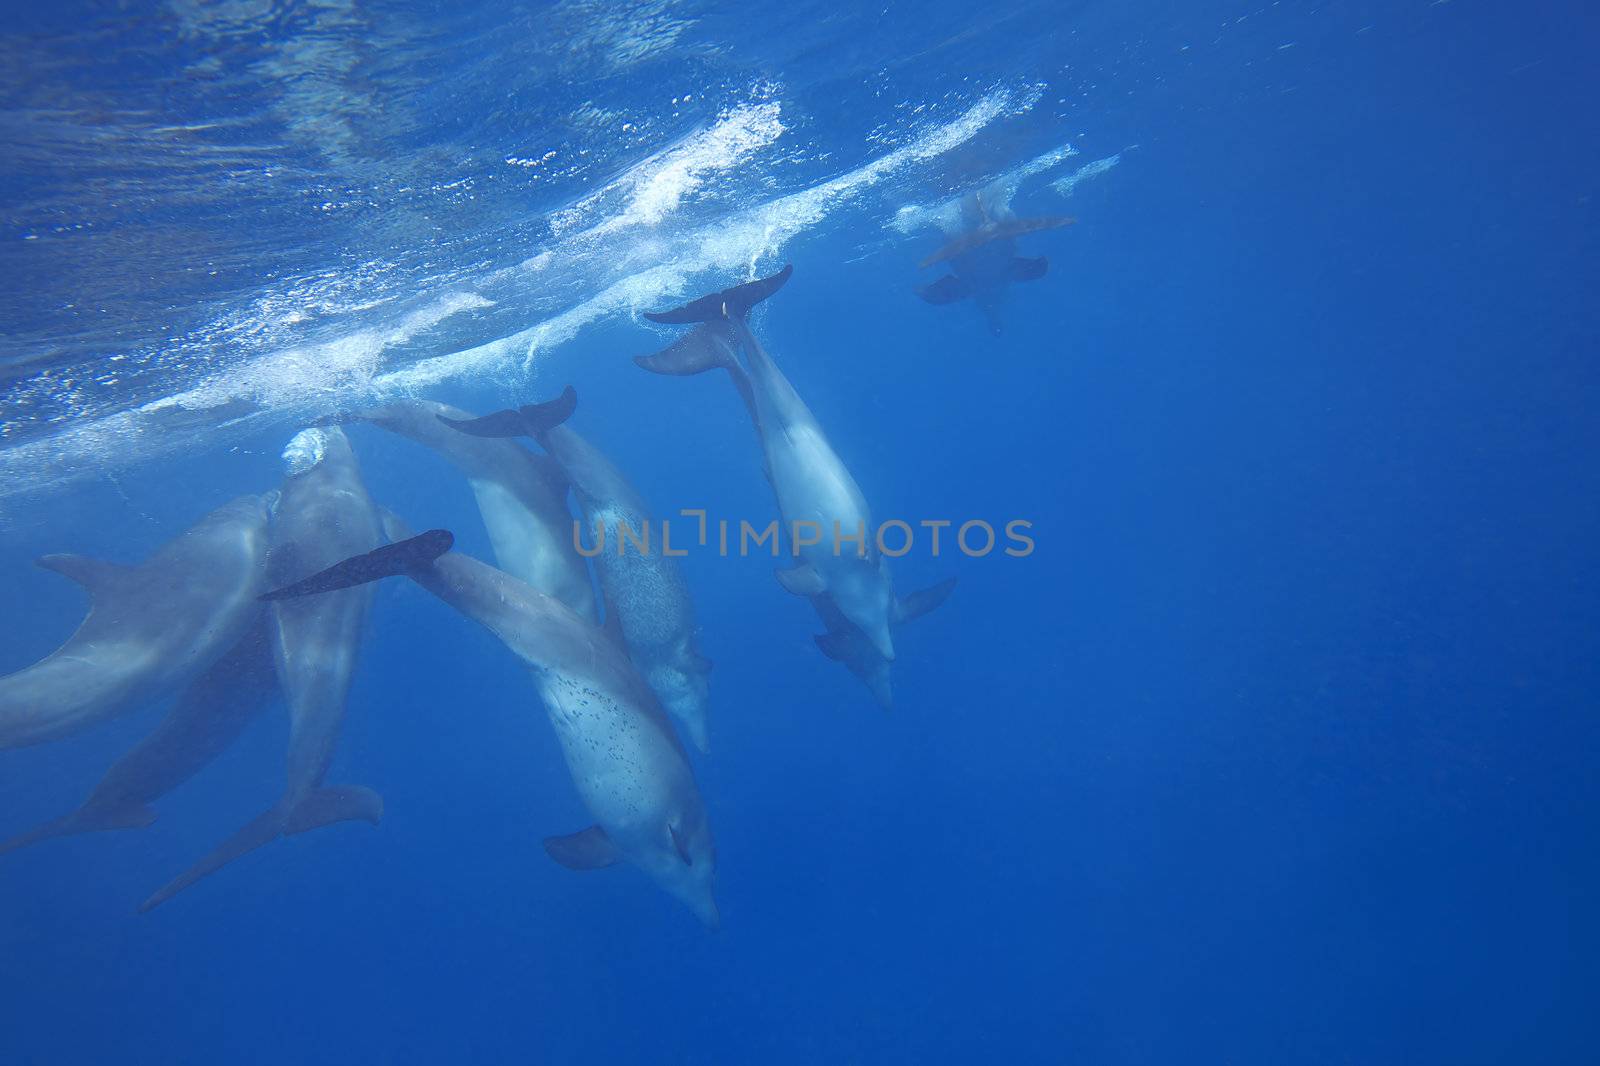 Wild Dolphins by kjorgen